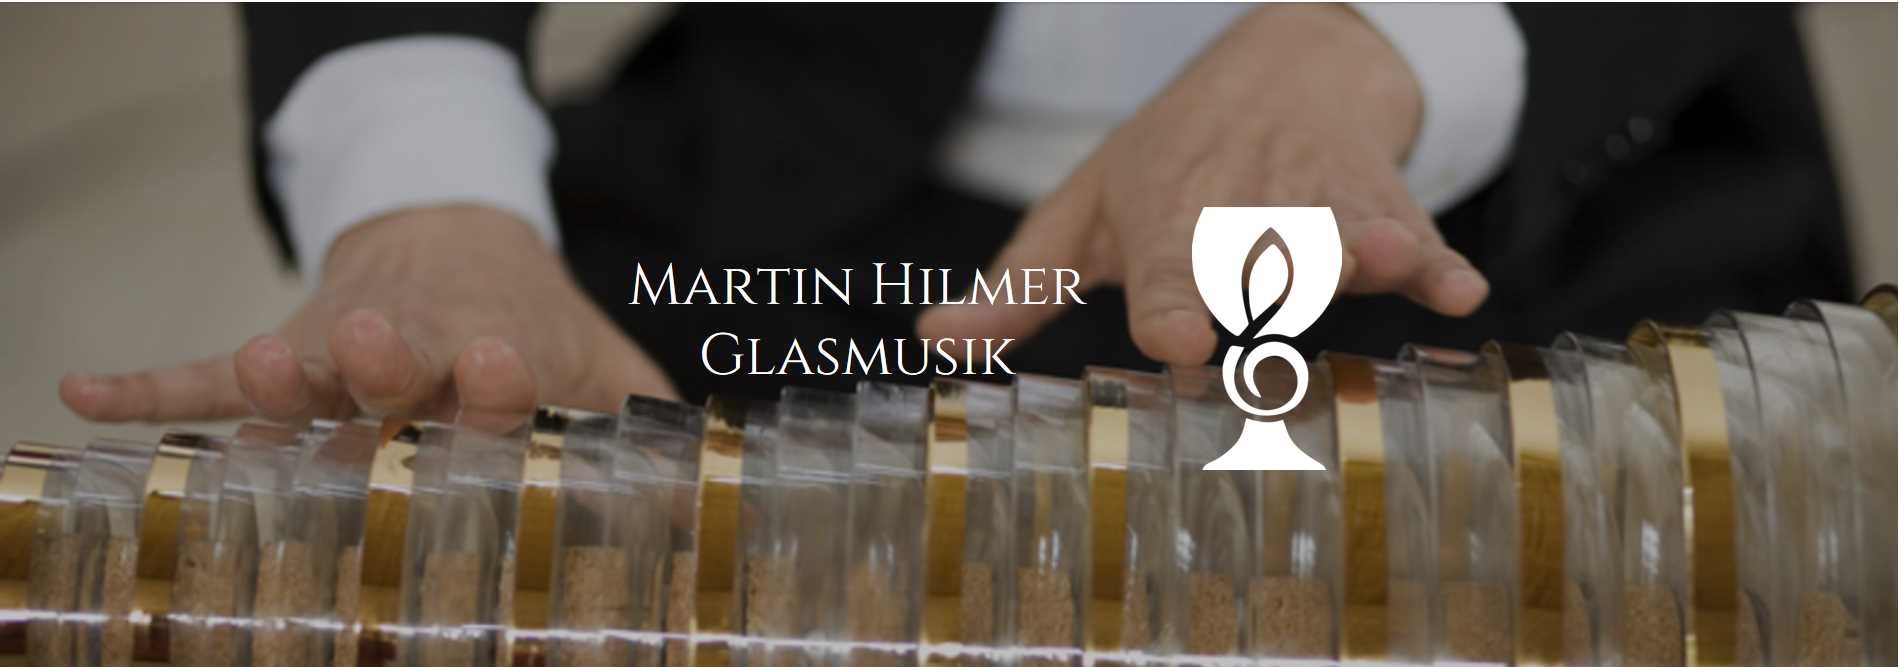  Martin Hilmer, Glasmusik